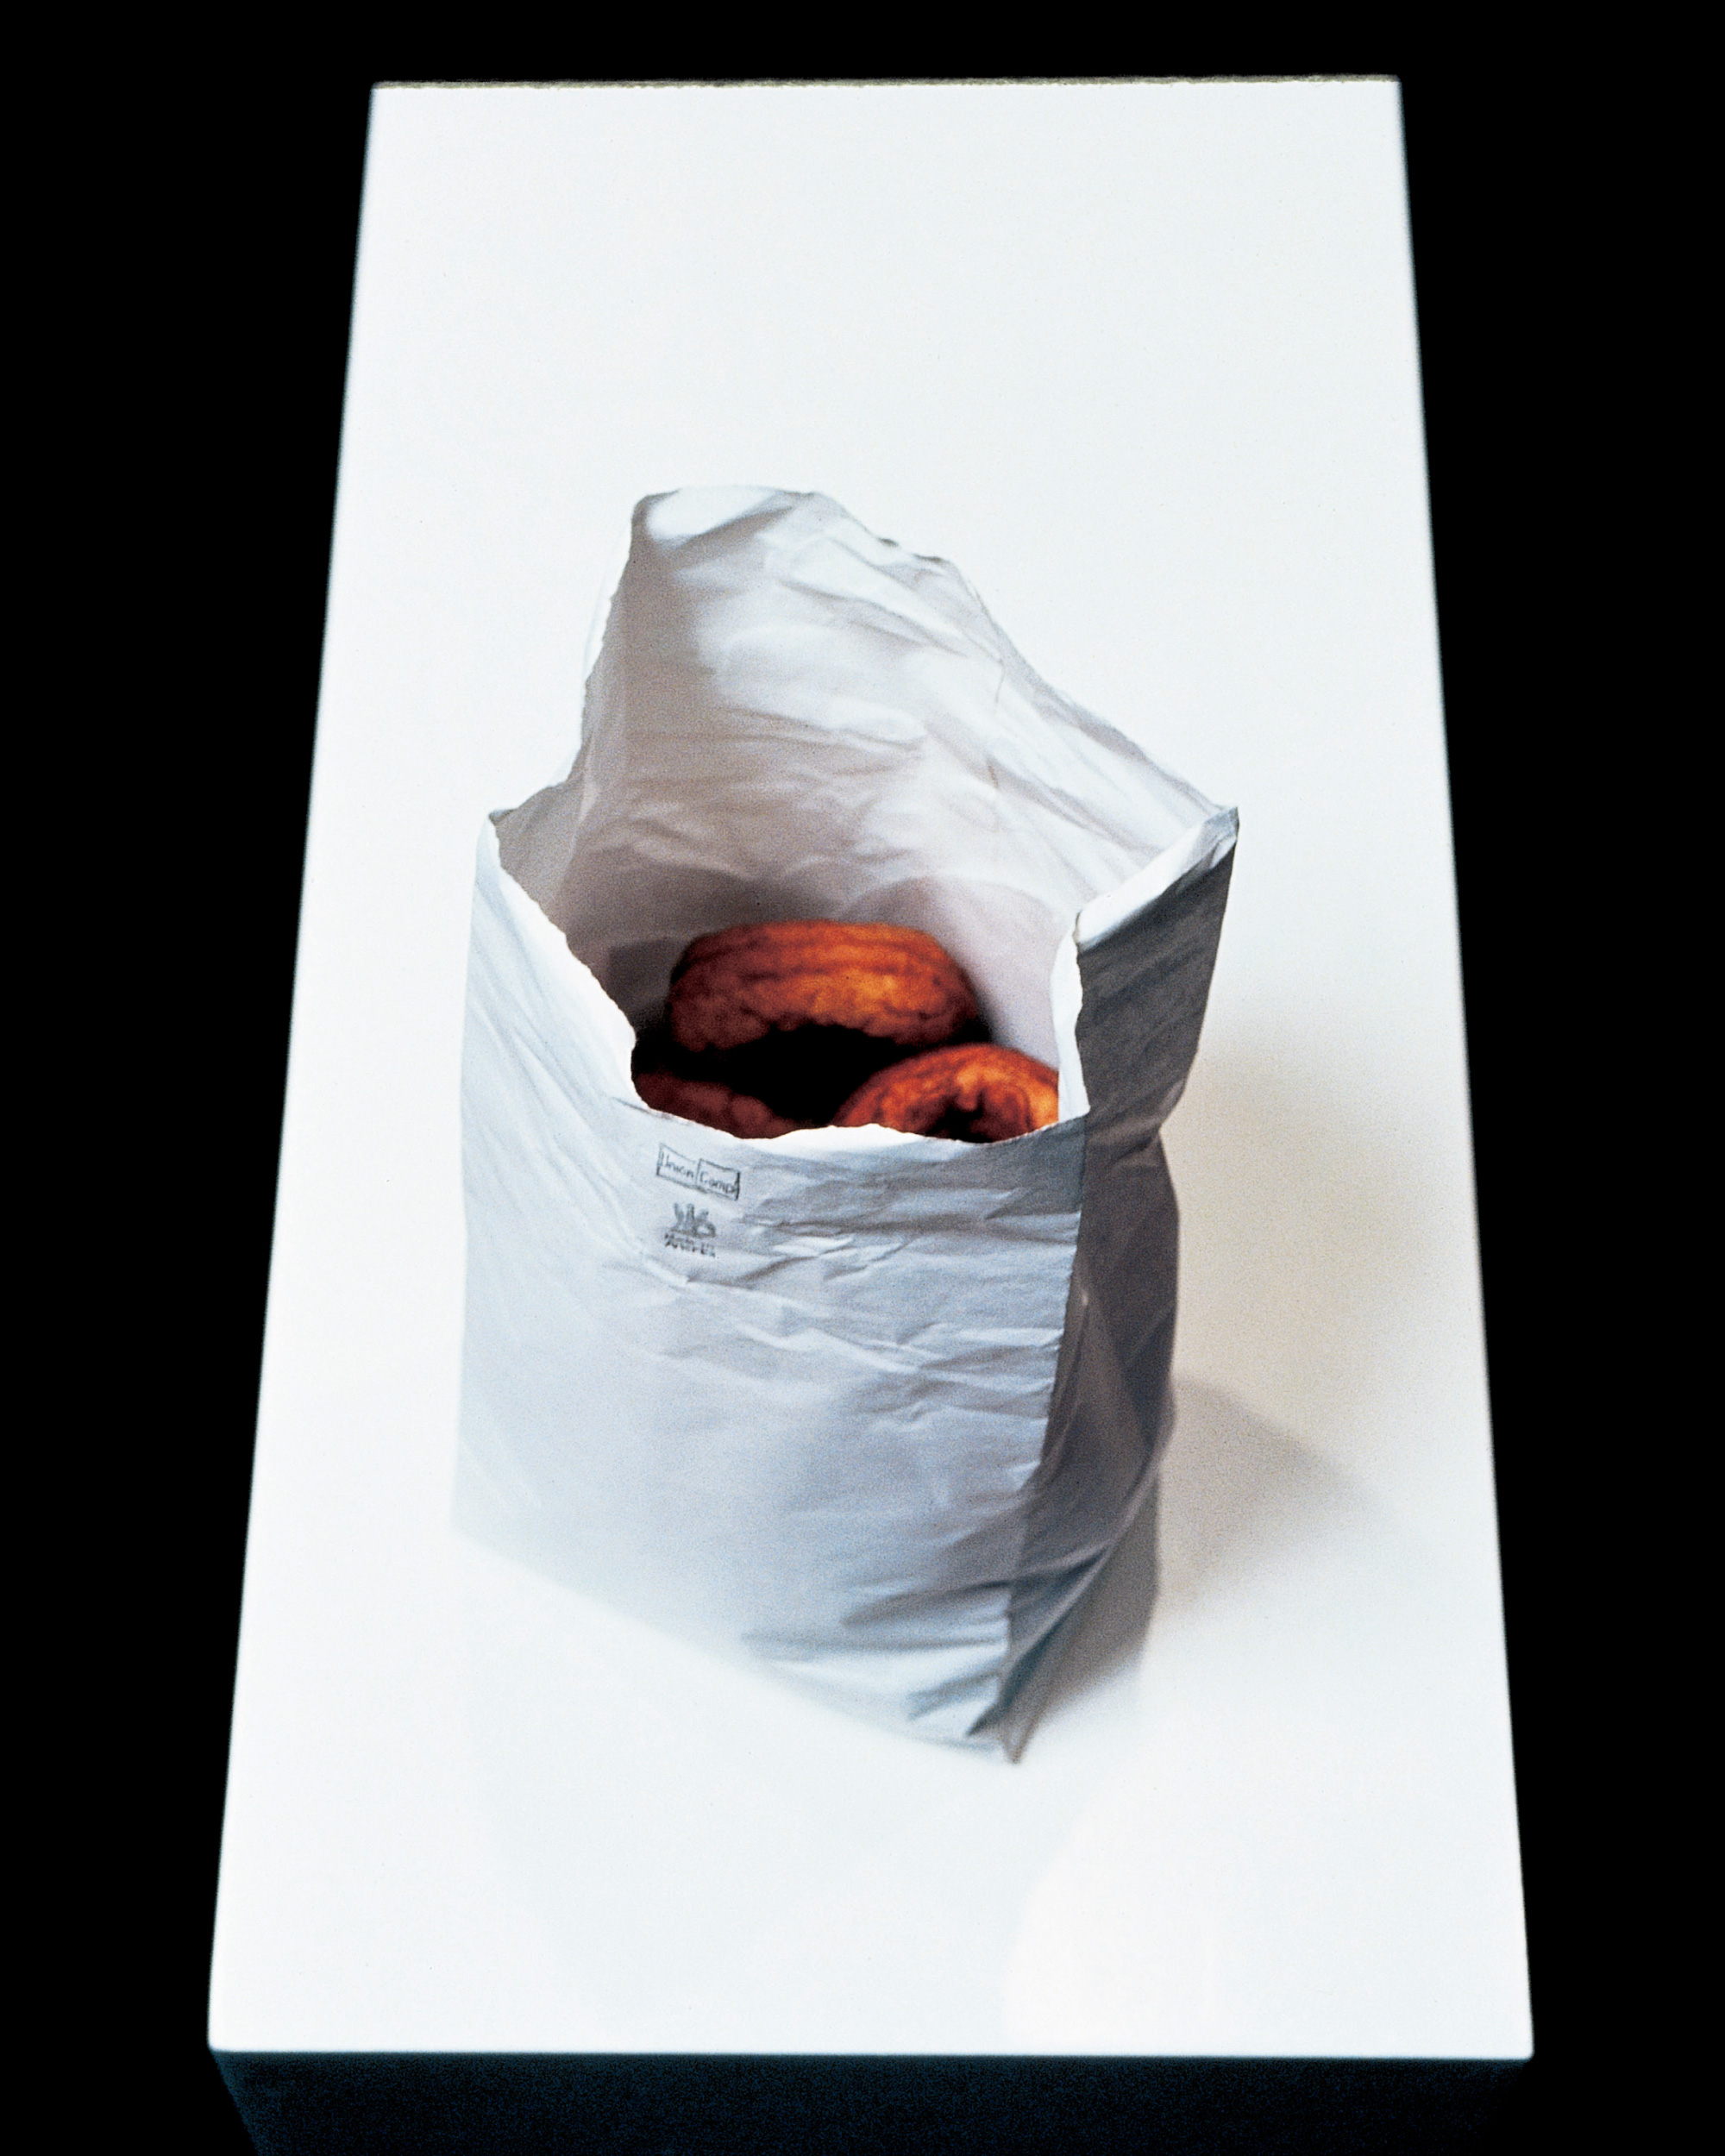 Robert Gober, Bag of Donuts, 1989. Photo: Christian Scheidemann.